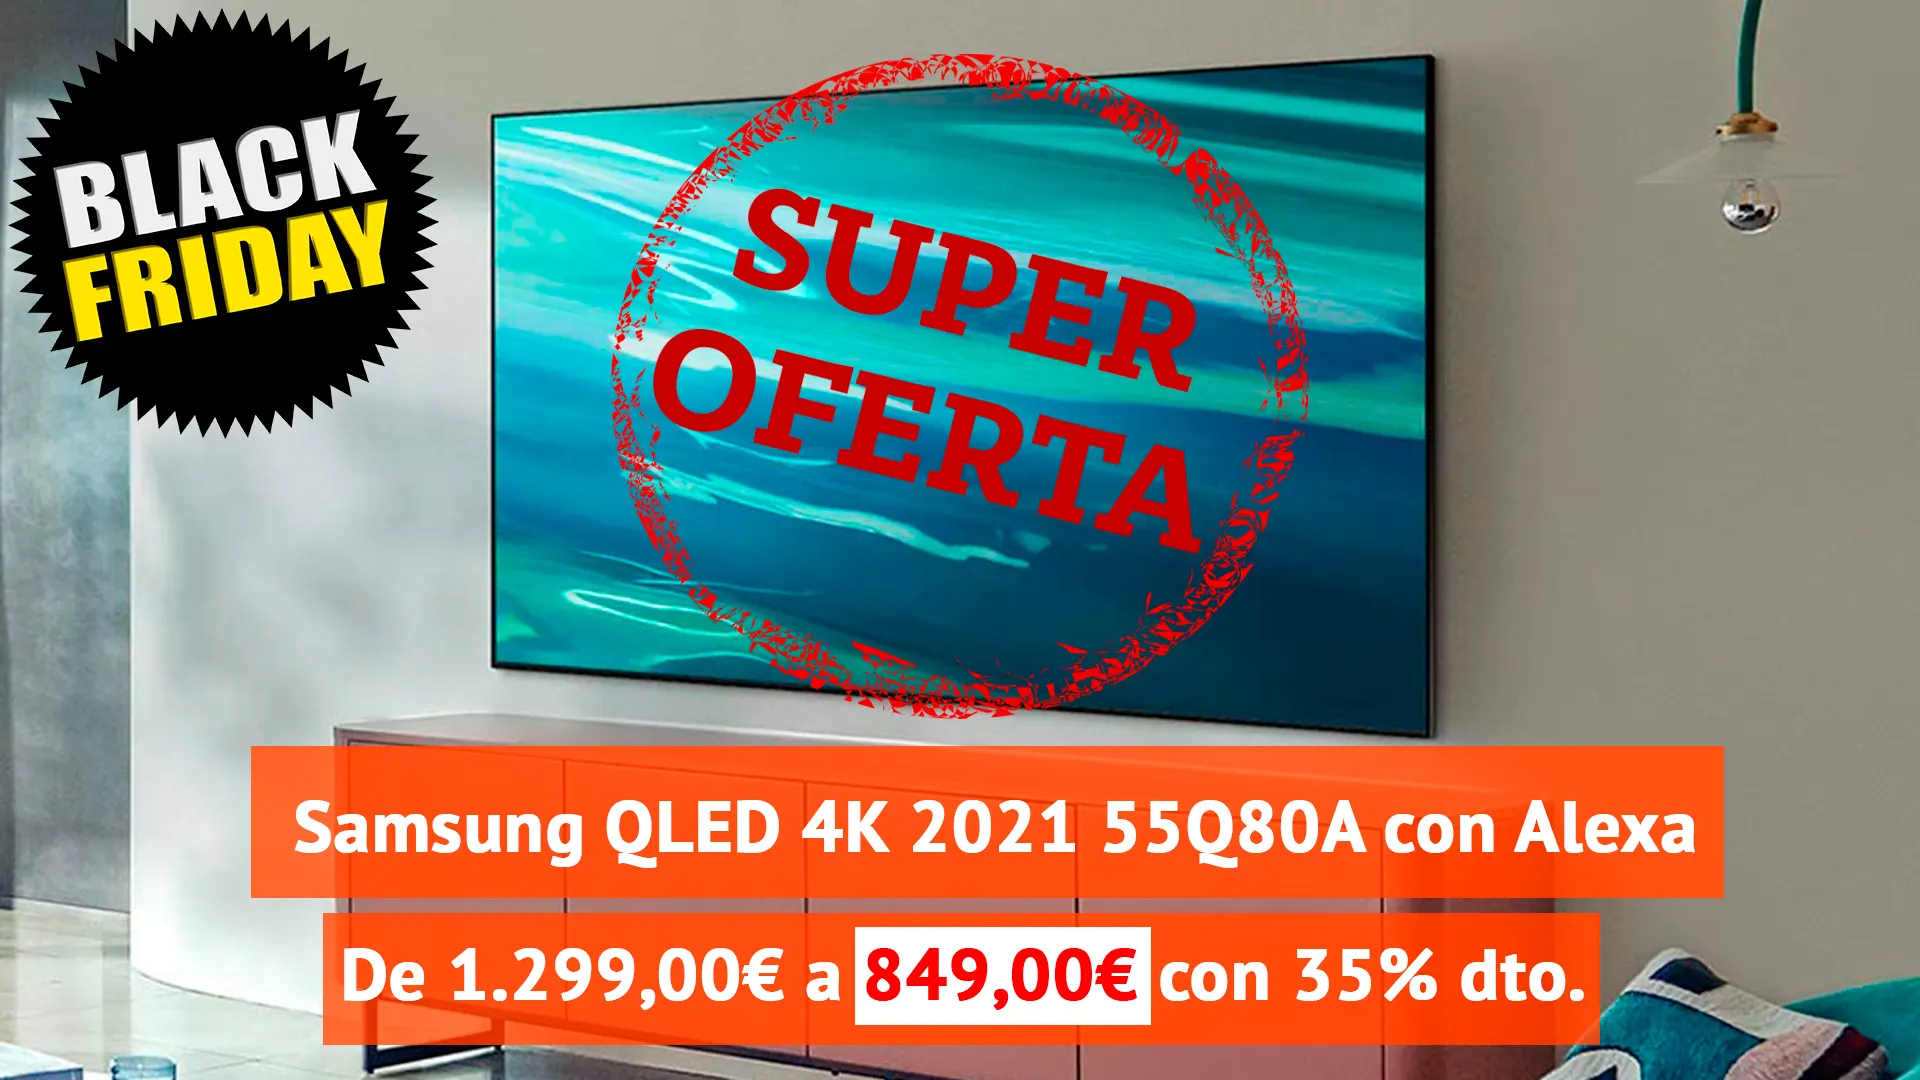 849€ -35% dto. sobre 1.299€- Smart TV de 55″ Samsung QLED 4K 2021 55Q80A Black Friday anticipado